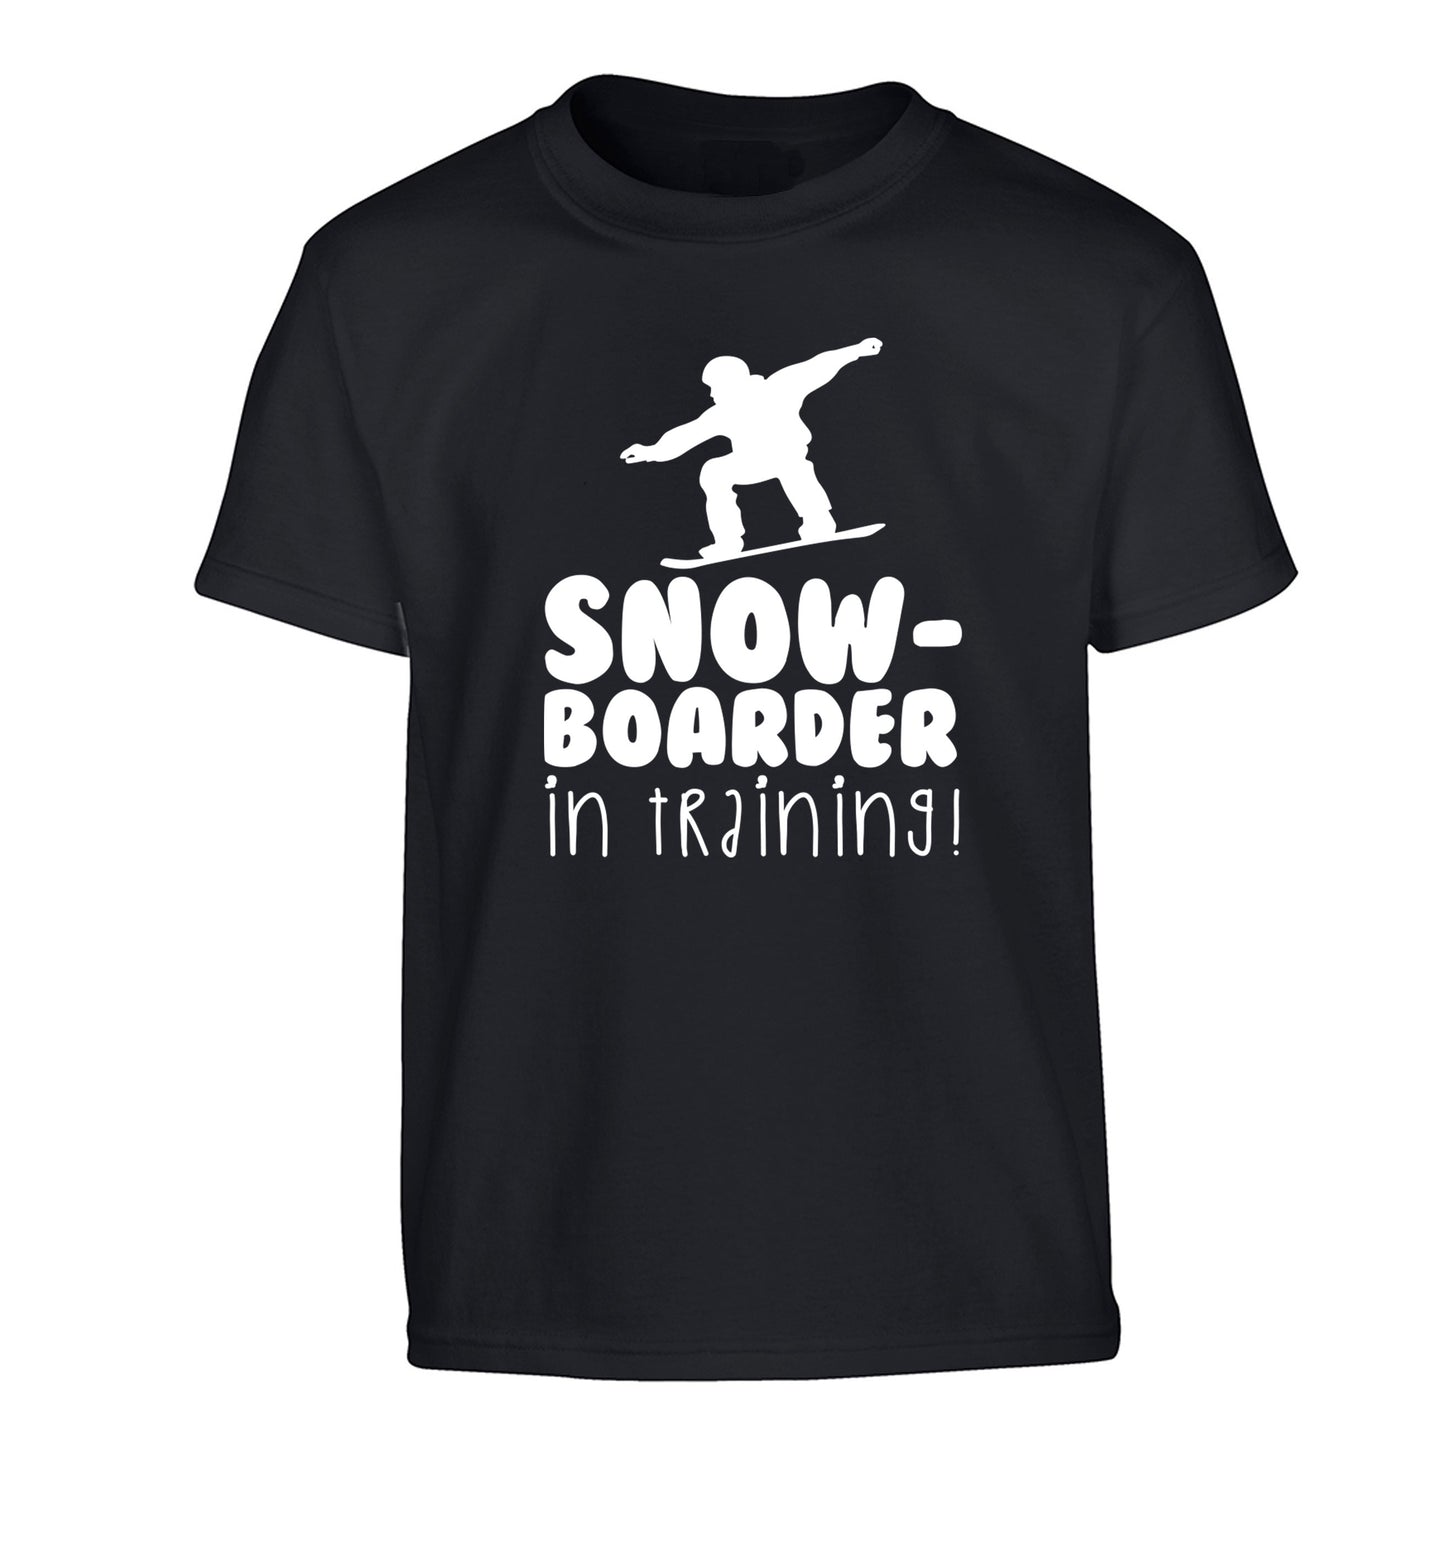 Snowboarder in training Children's black Tshirt 12-14 Years